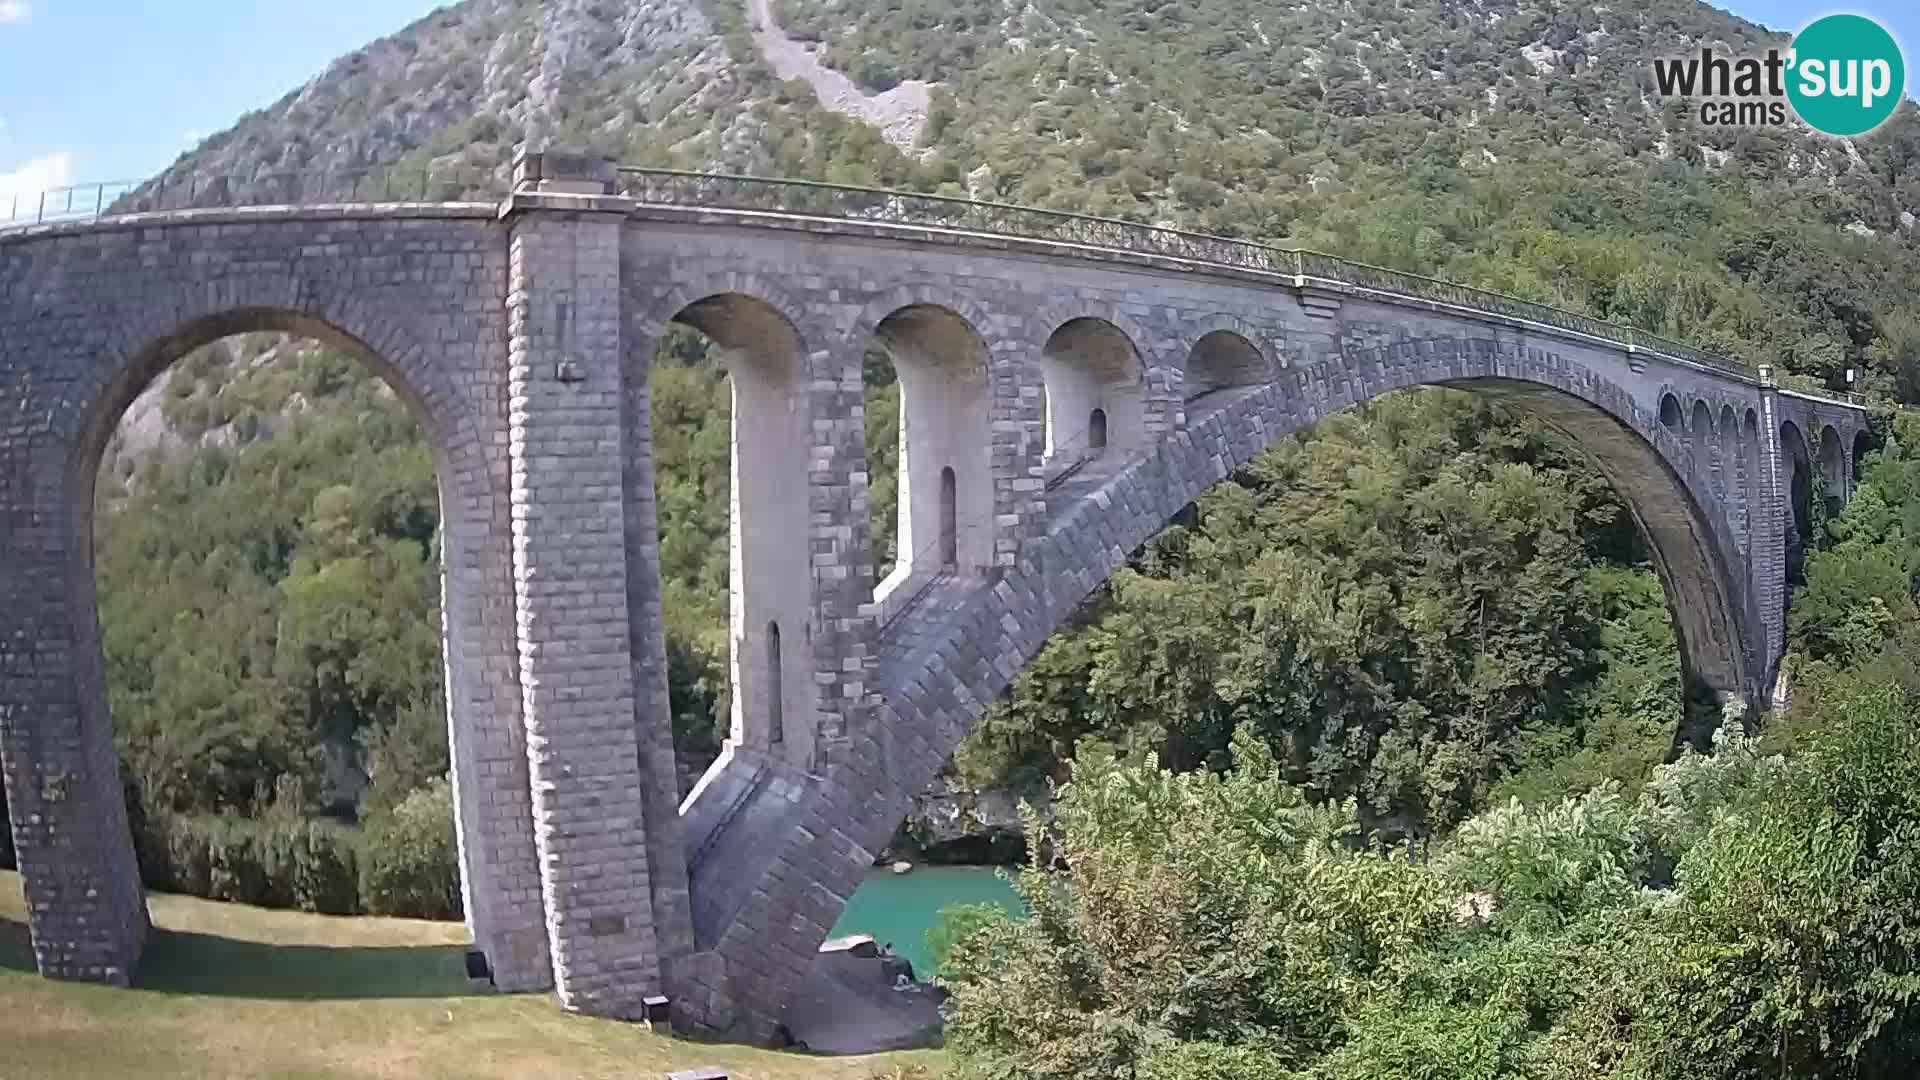 Salcanobrücke – webcam